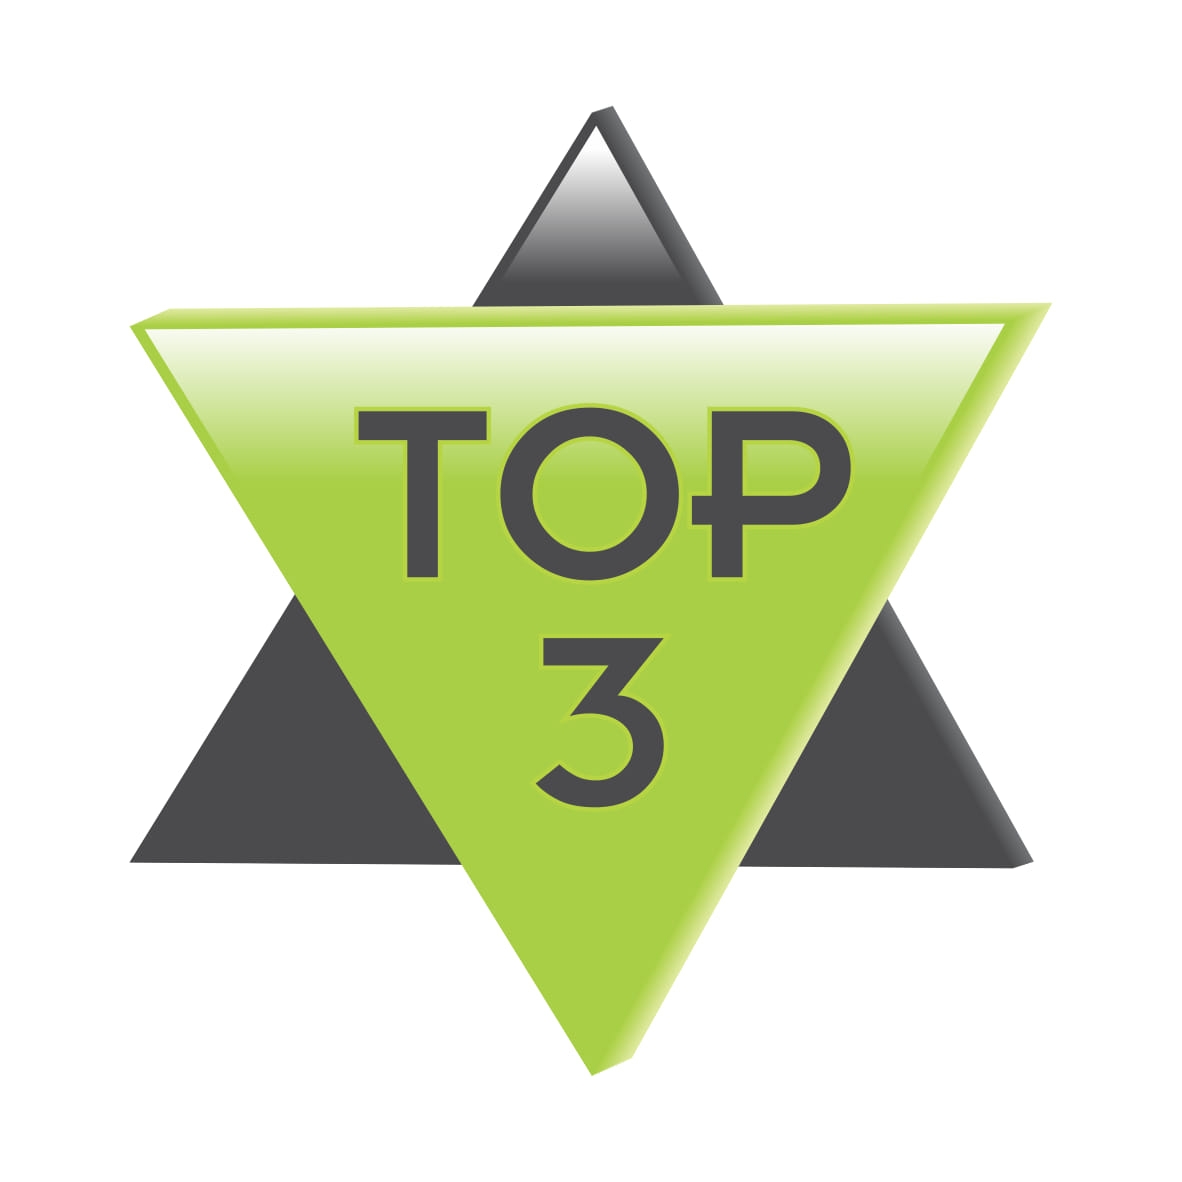 Top 3 logo